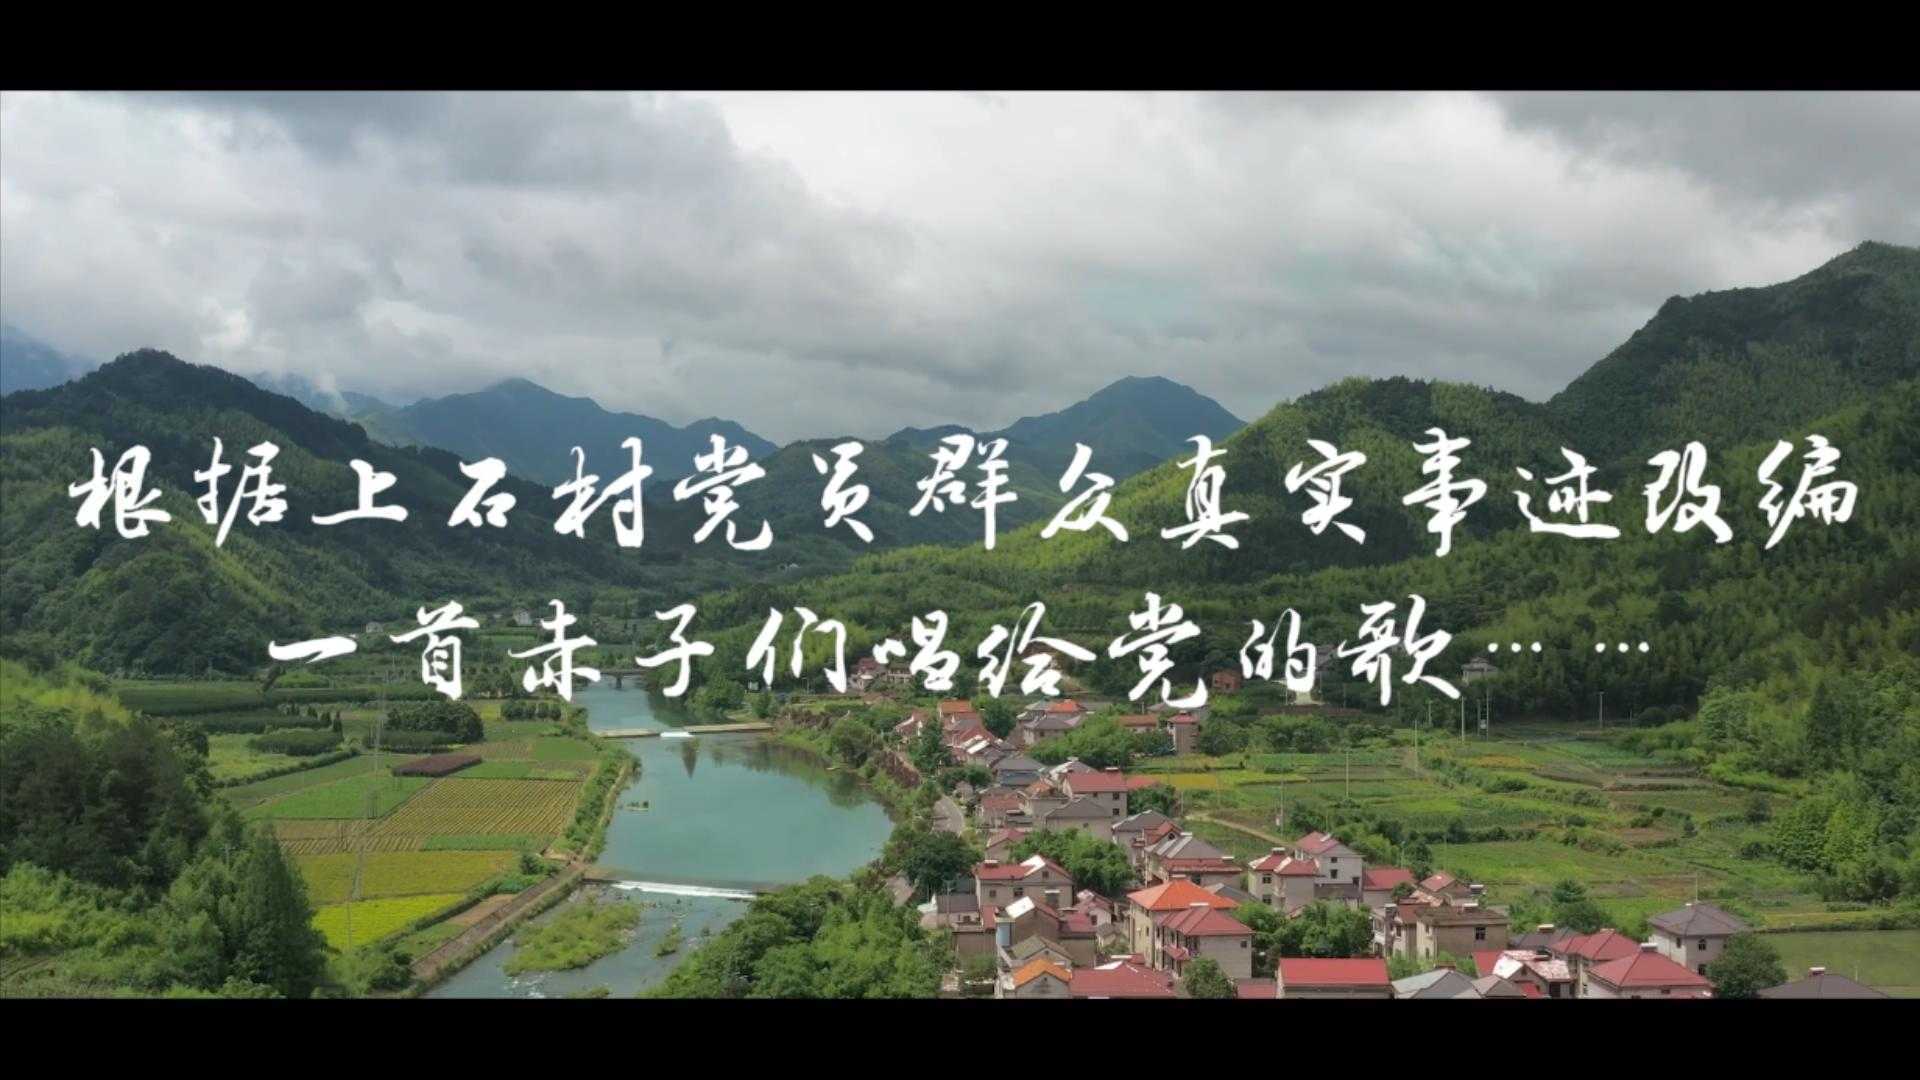 上石村庆祝中国共产党建党100周年微视频《唱支山歌给党听》